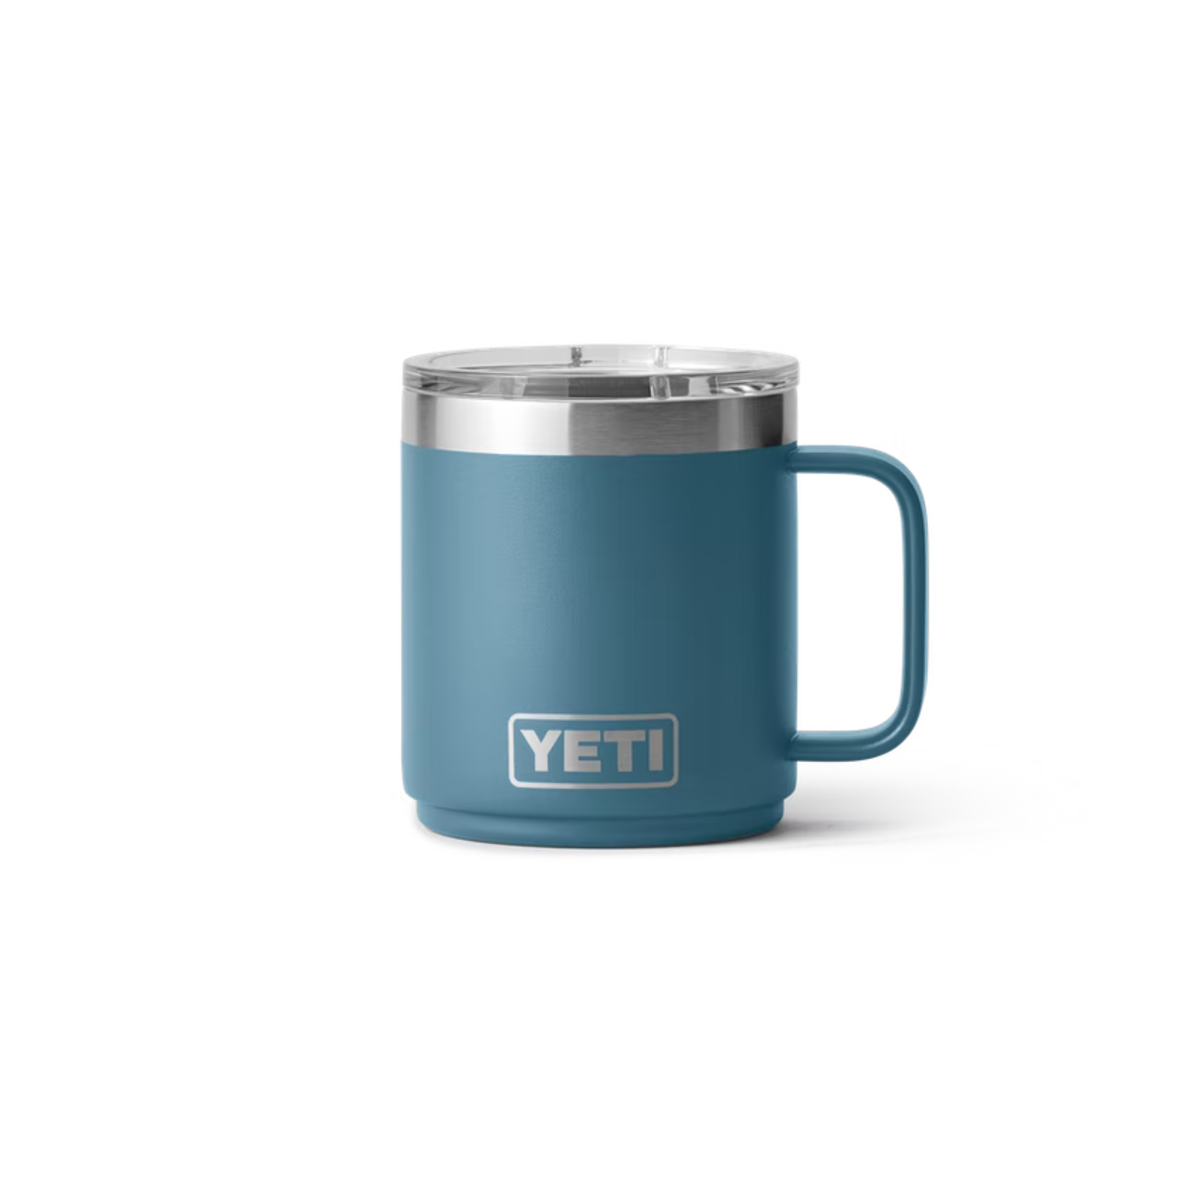 Yeti Rambler 10oz Mug in Nordic Blue